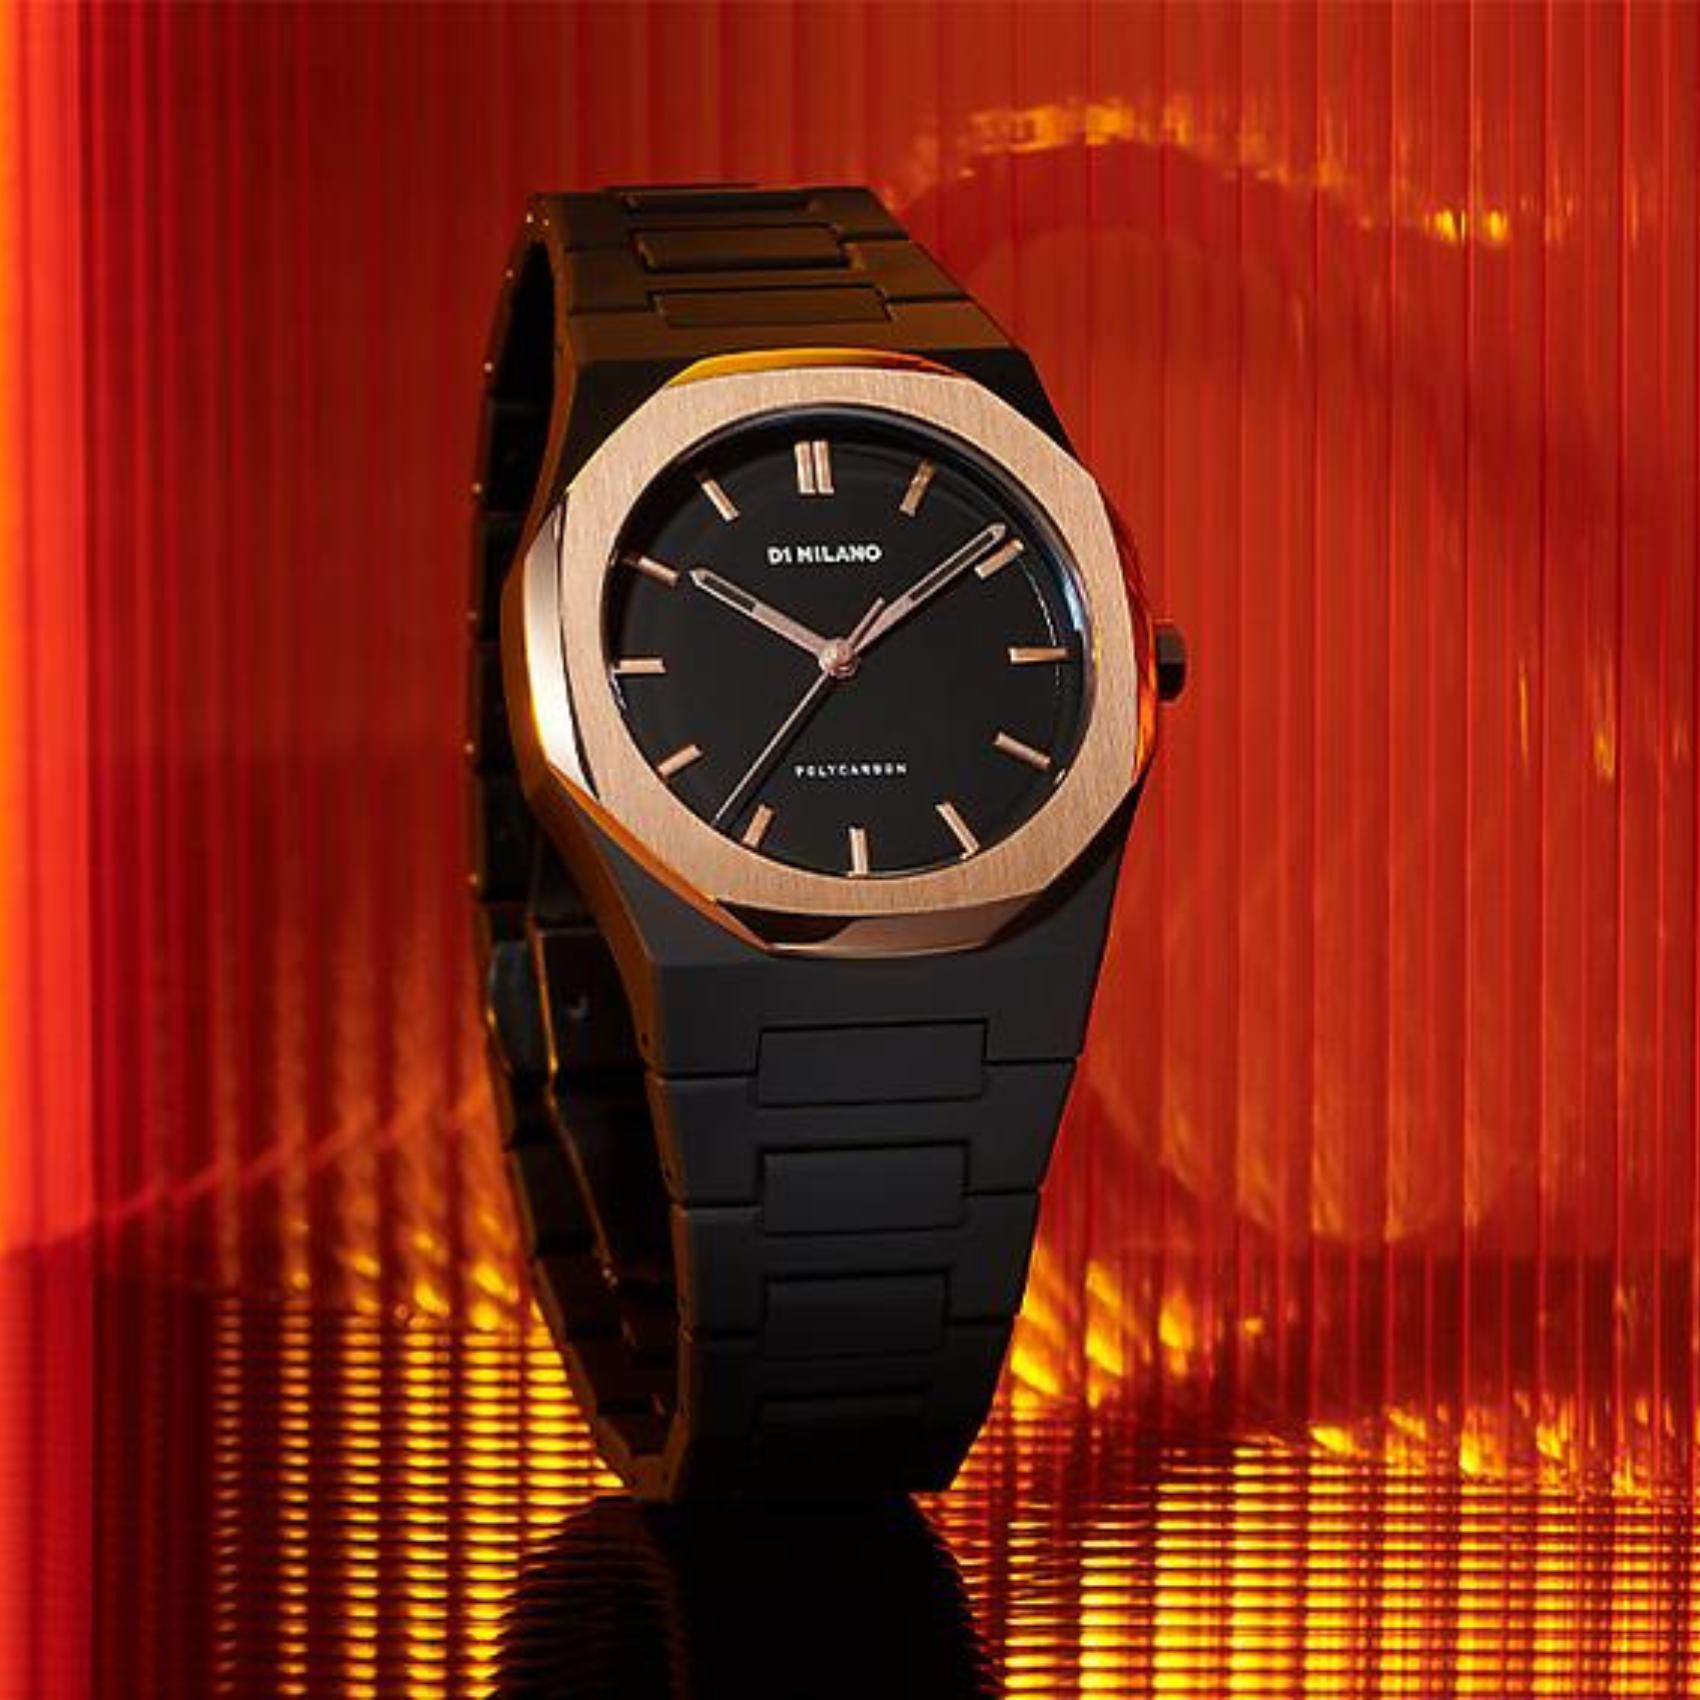 Ρολόι D1 Milano D1-PCBJ15 gloaming, με μαύρο μπρασελέ από πολυκαρμπονικό, μαύρο καντράν με ροζ χρυσές λεπτομέρειες και οκτάγωνο στεφάνι διαμέτρου 40.5 mm.